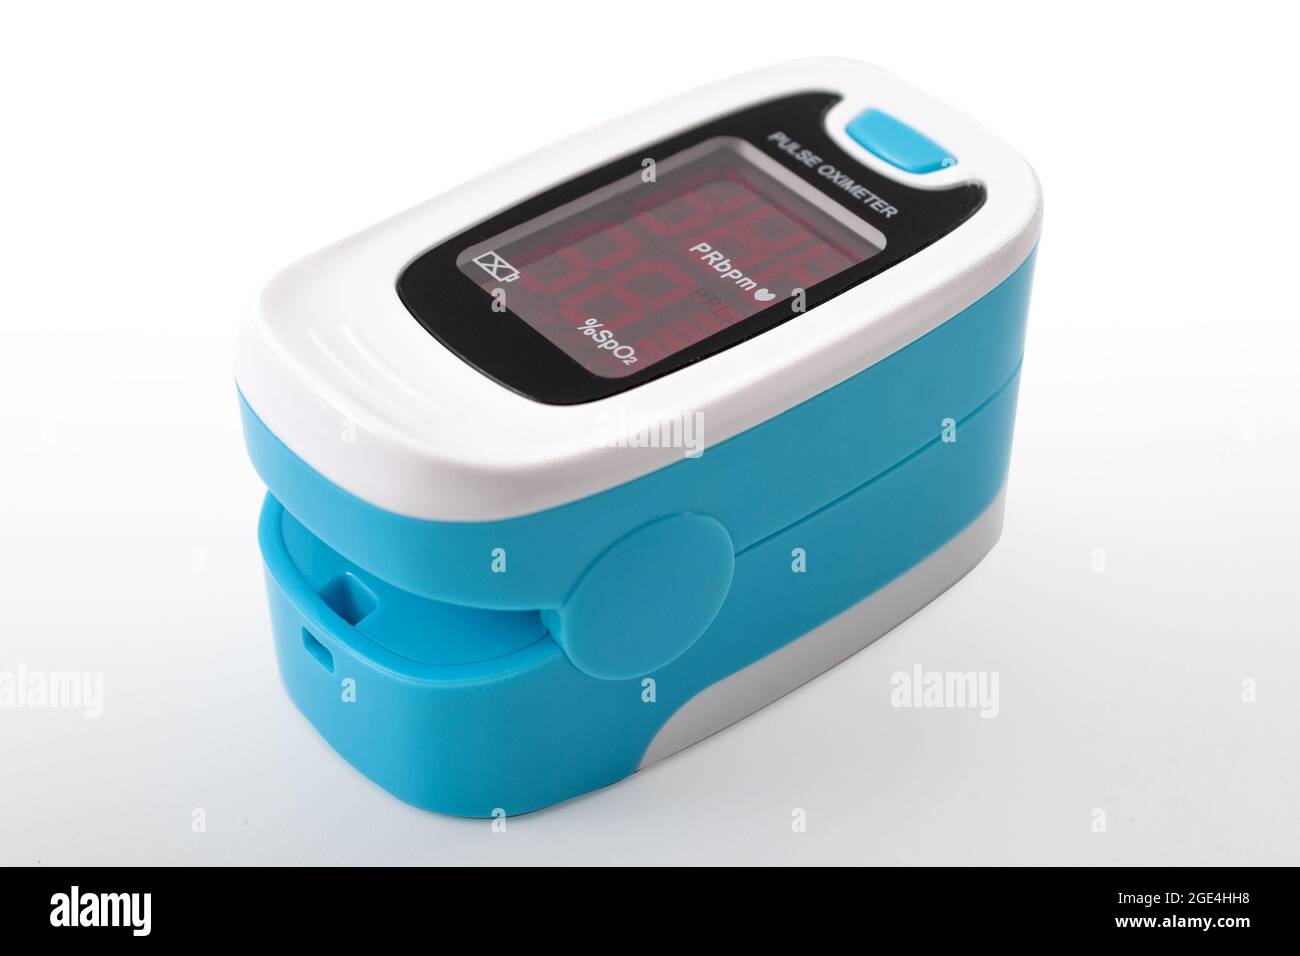 Santé cardiovasculaire, niveau de saturation en oxygène et test sanguin concept de dispositif électronique avec oxymètre de pouls isolé sur fond bleu avec clippi Banque D'Images